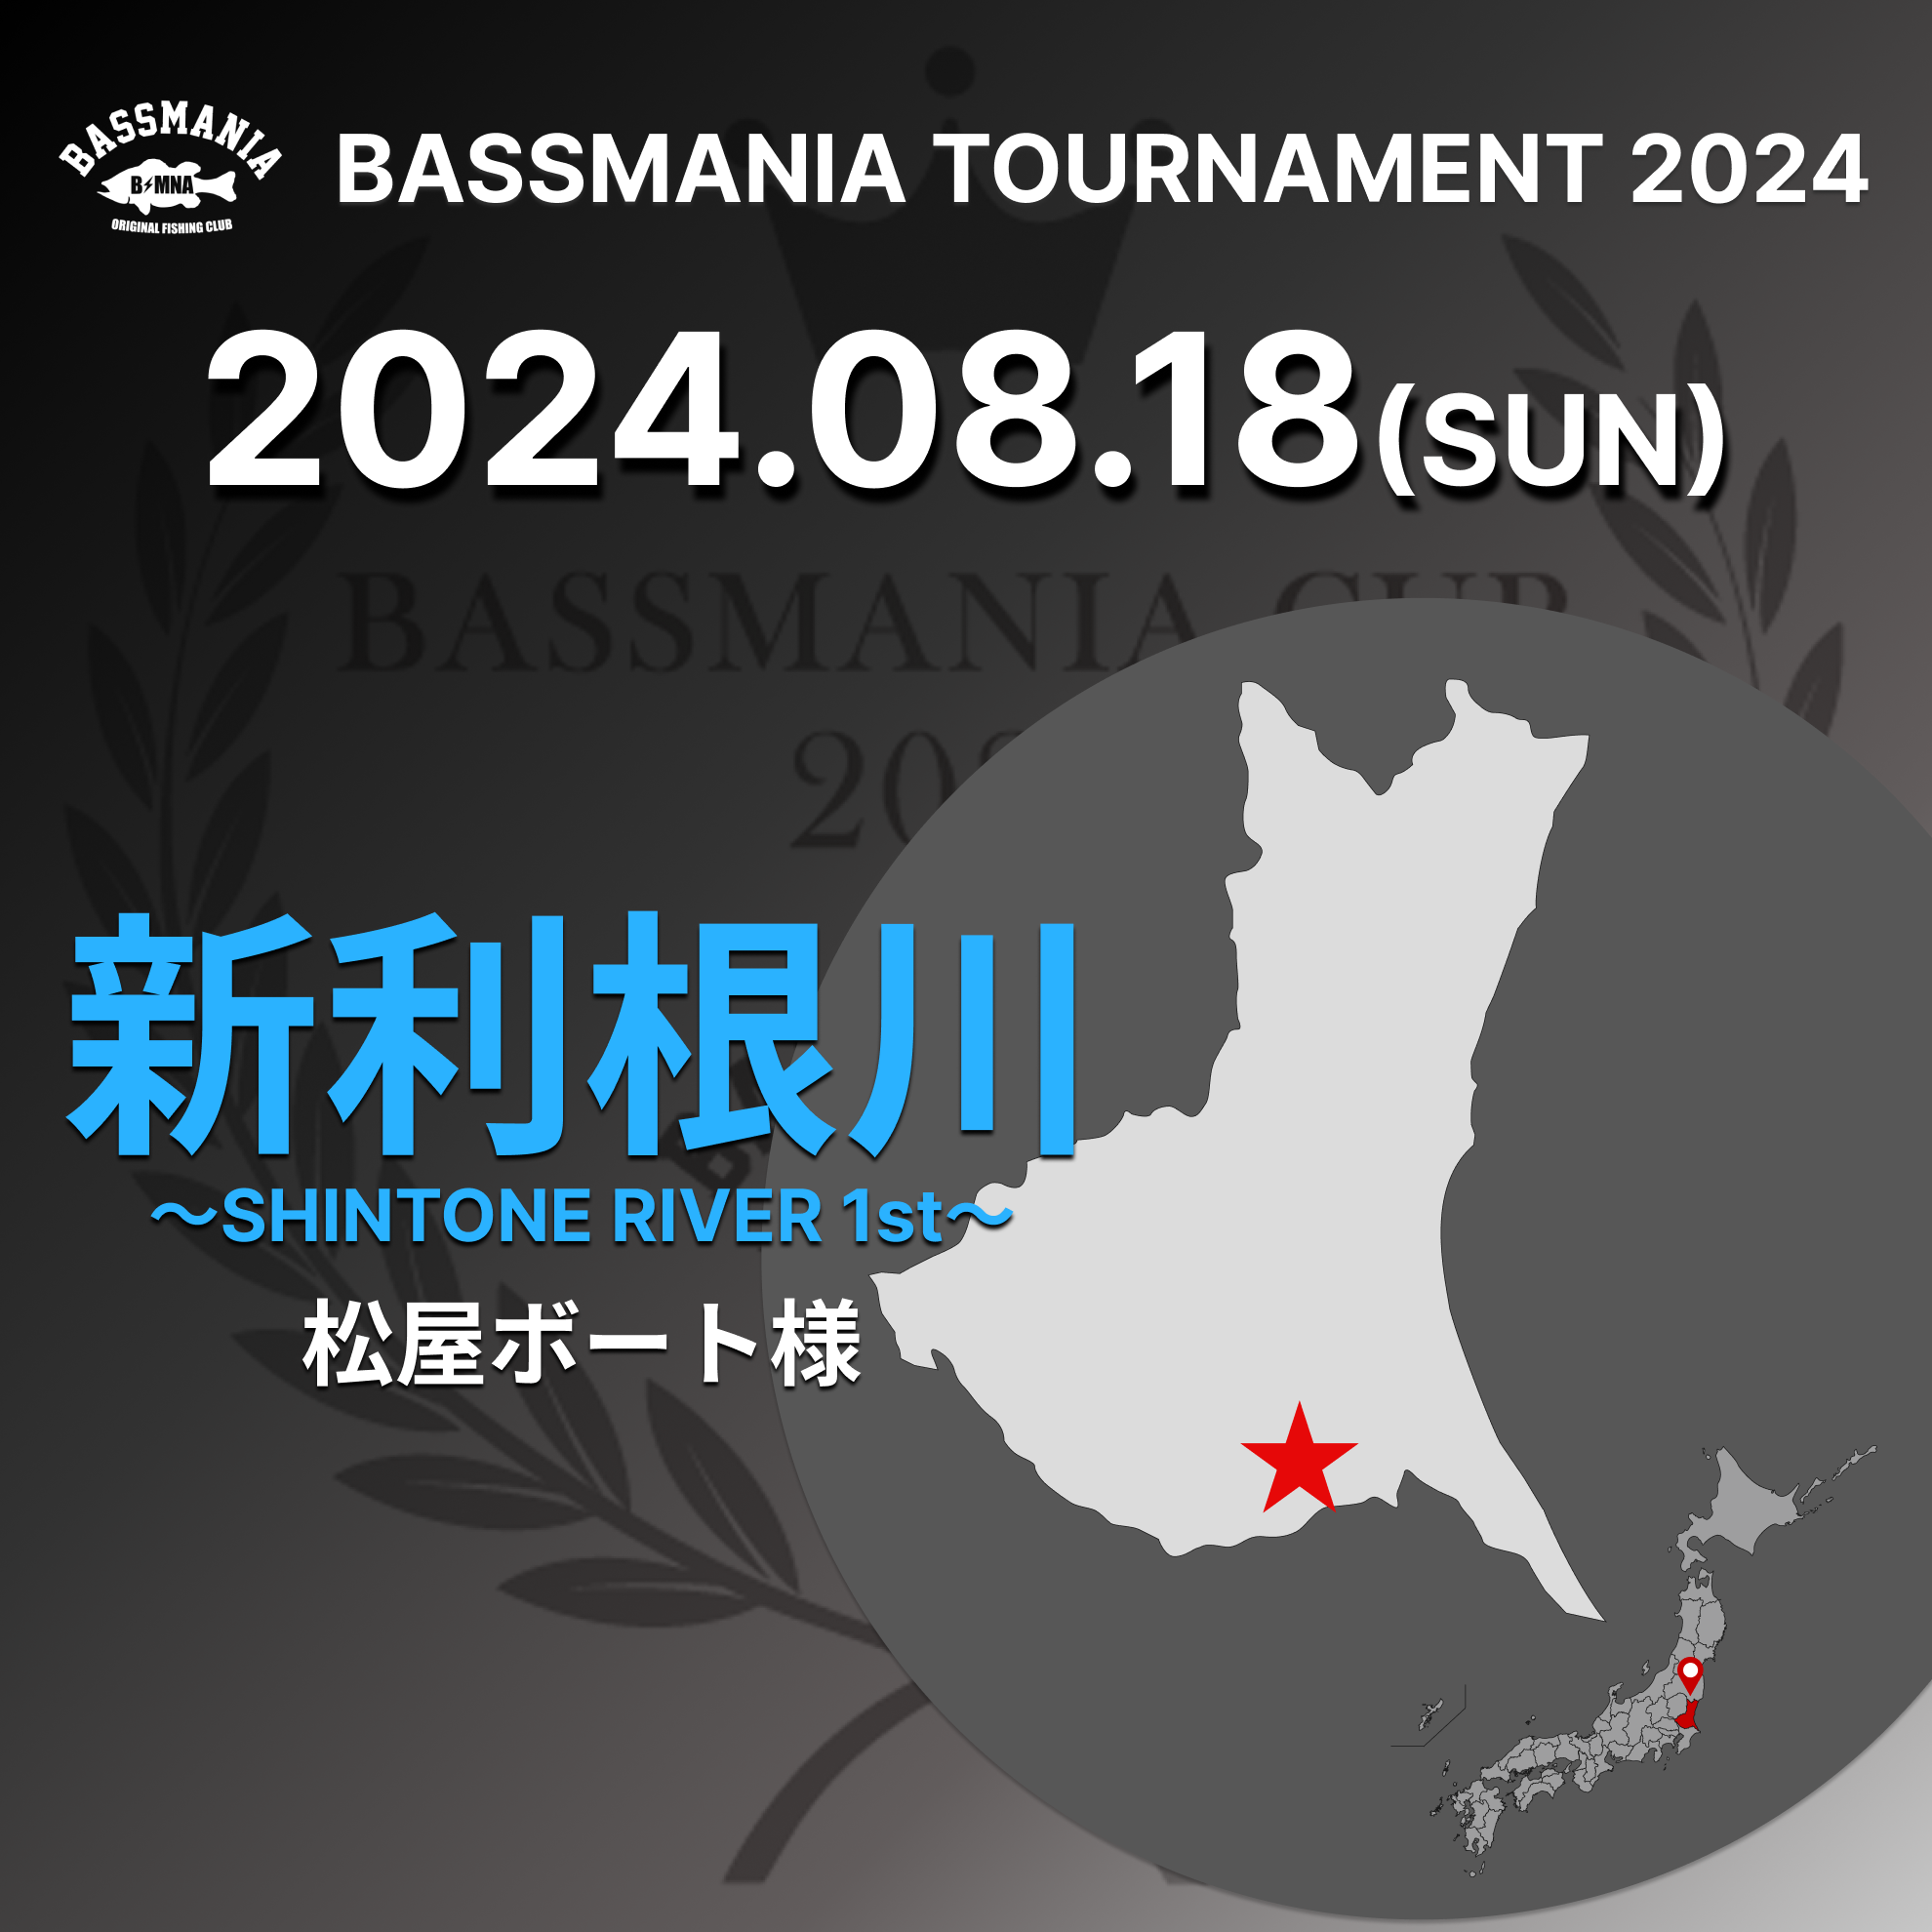 BASSMANIA TOURNAMENT 2024 ~SHINTONE RIVER 3rd~